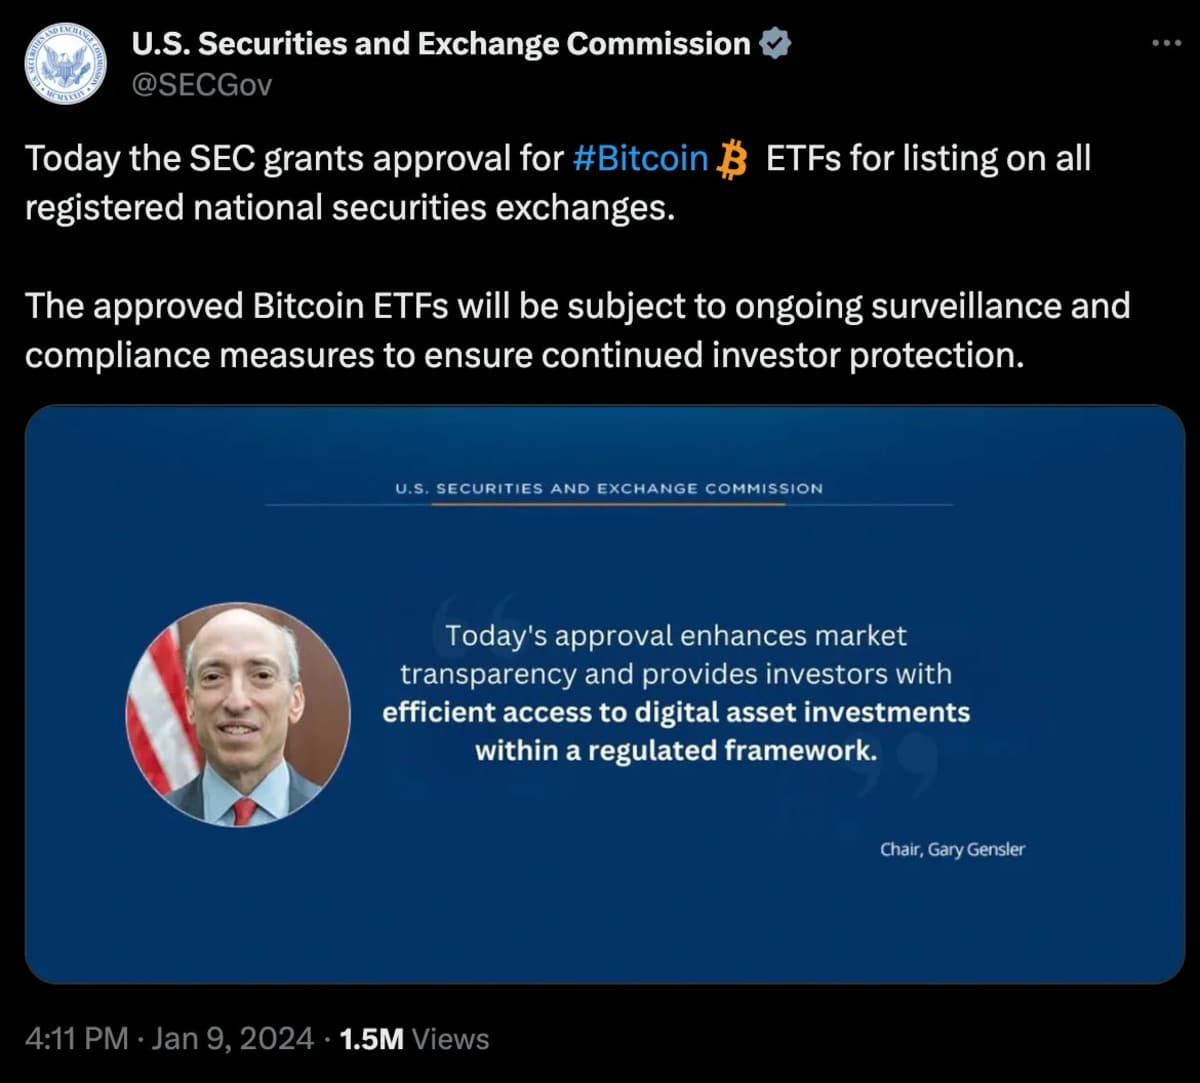 La SEC enfrenta una reacción violenta por un tweet erróneo sobre el ETF de Bitcoin 